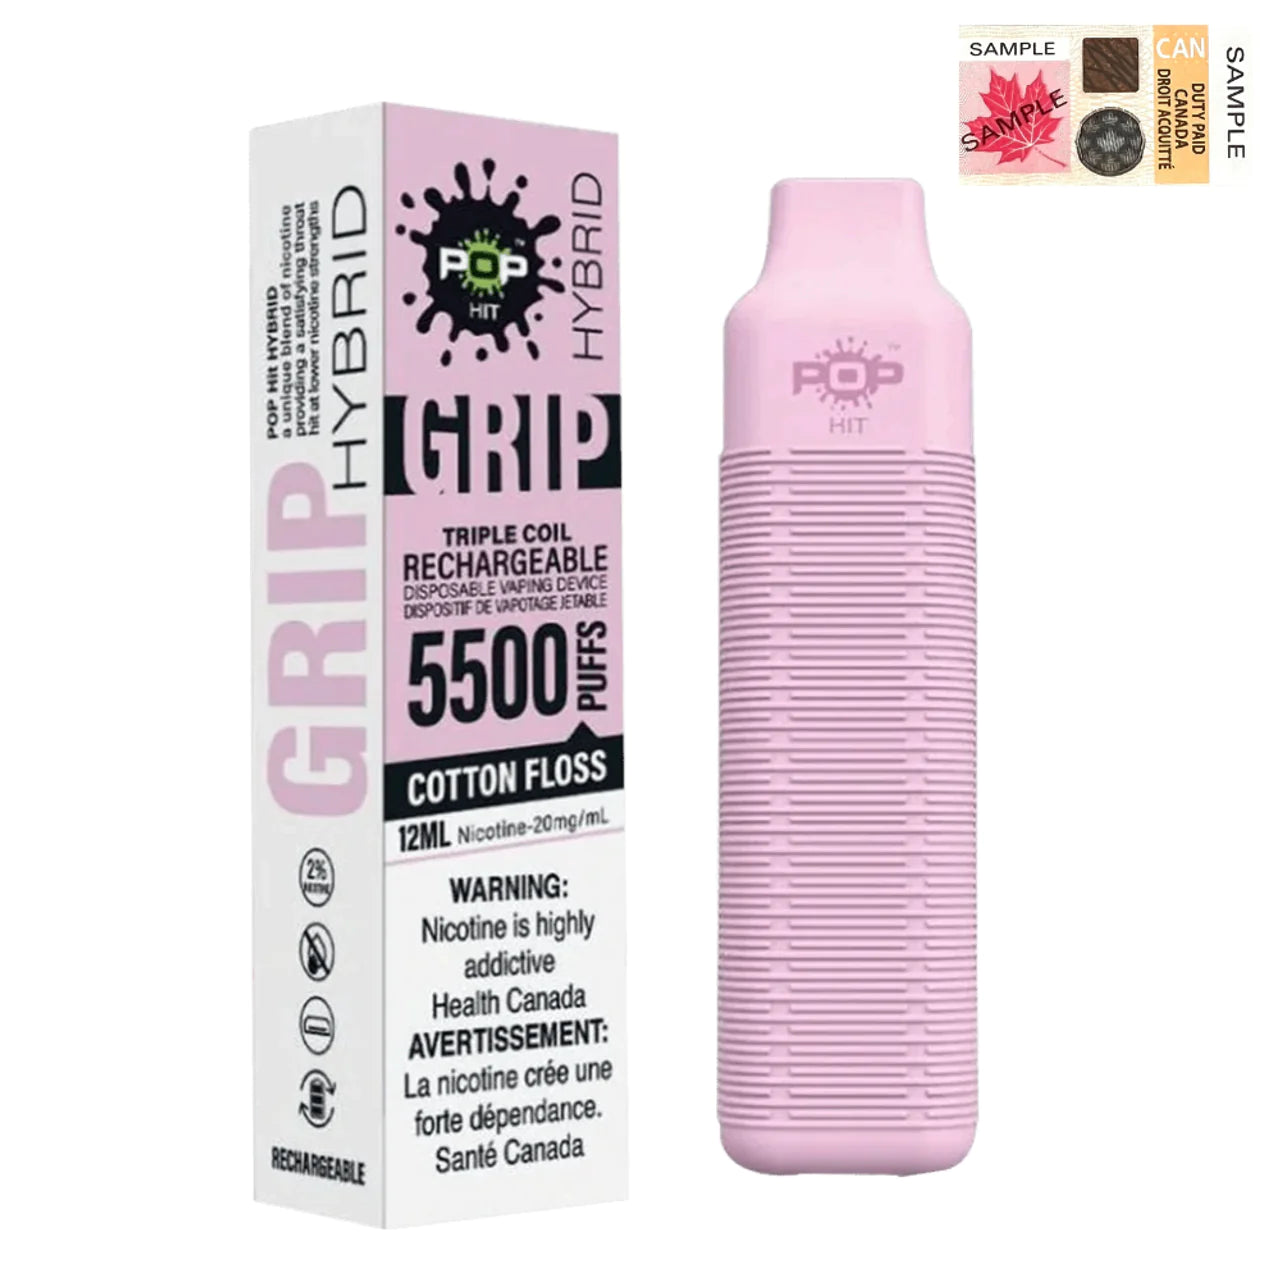 Pop Hybrid Grip 5500 - Cotton Floss